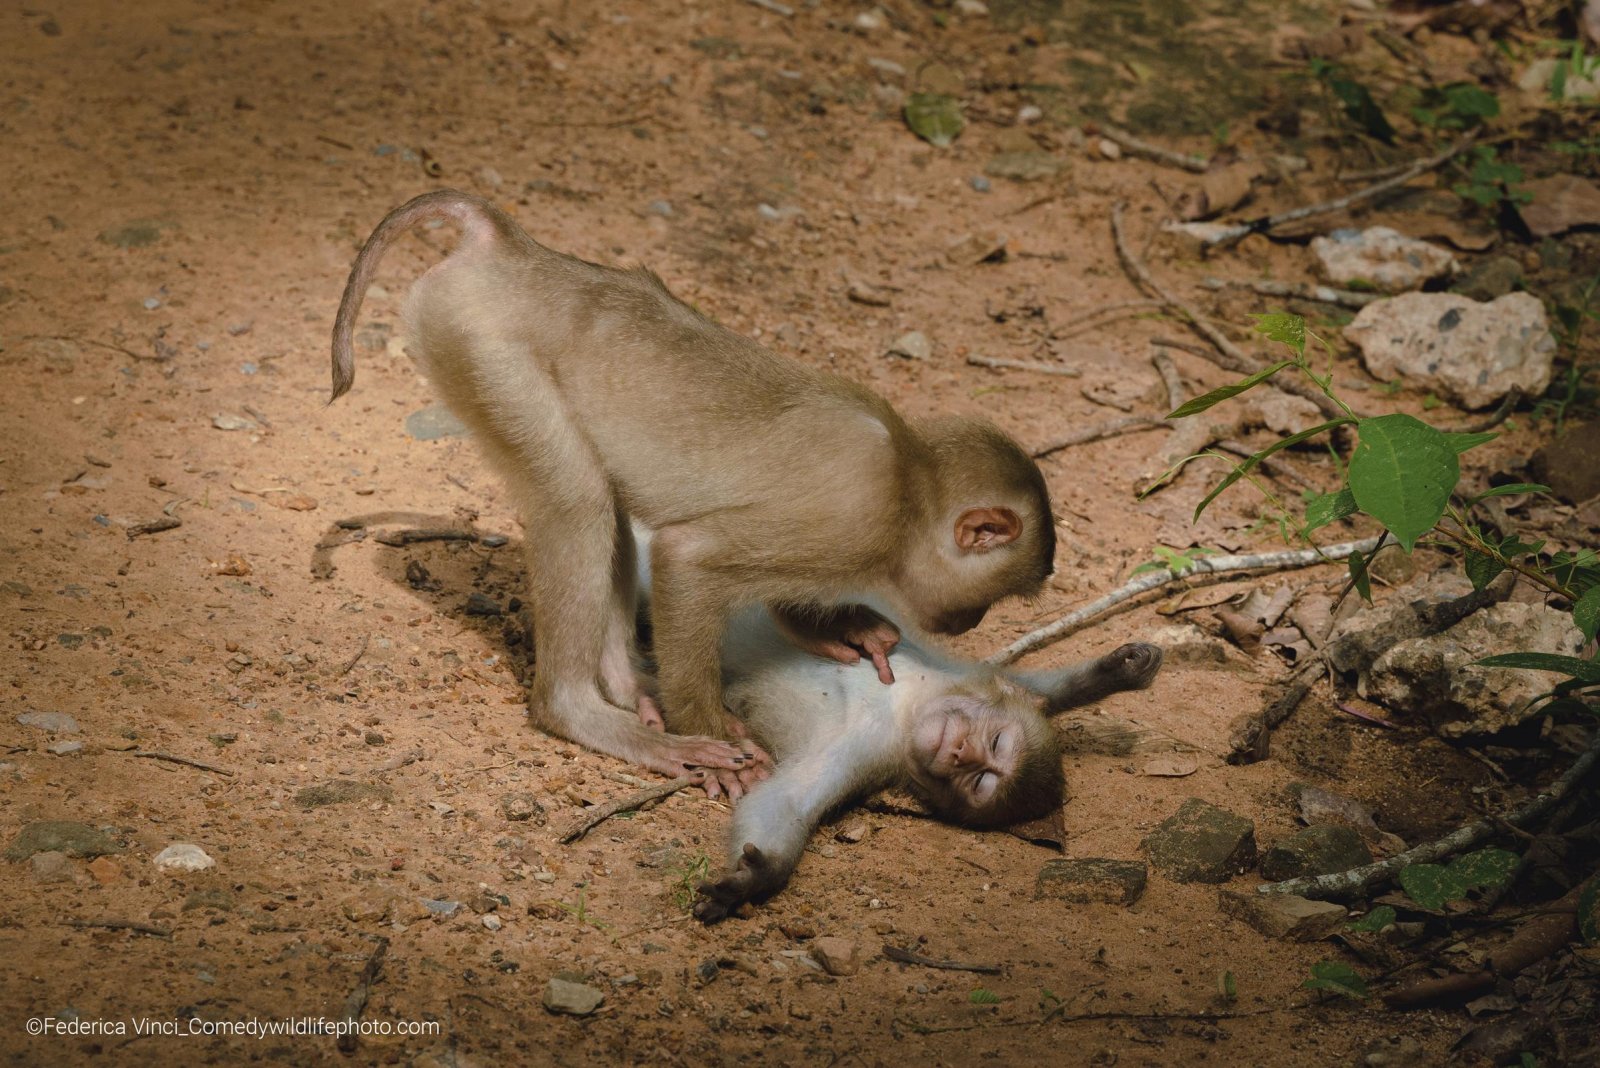 Funny wildlife photo of monkeys